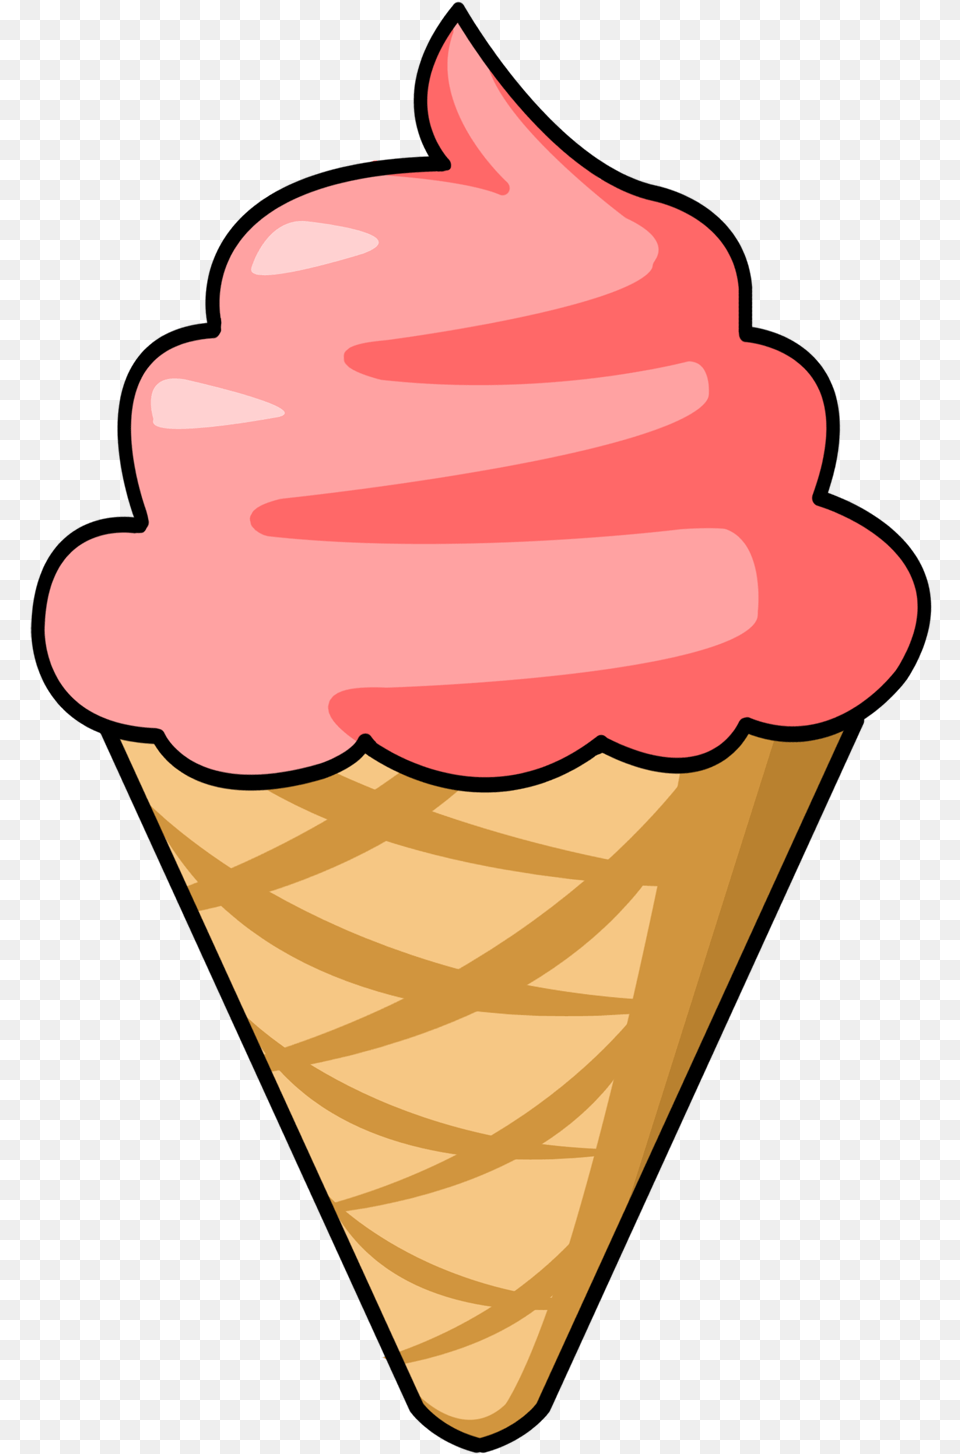 Ice Cream Cone Ice Clip Art Image 9 Ice Cream Clipart, Dessert, Food, Ice Cream, Animal Png